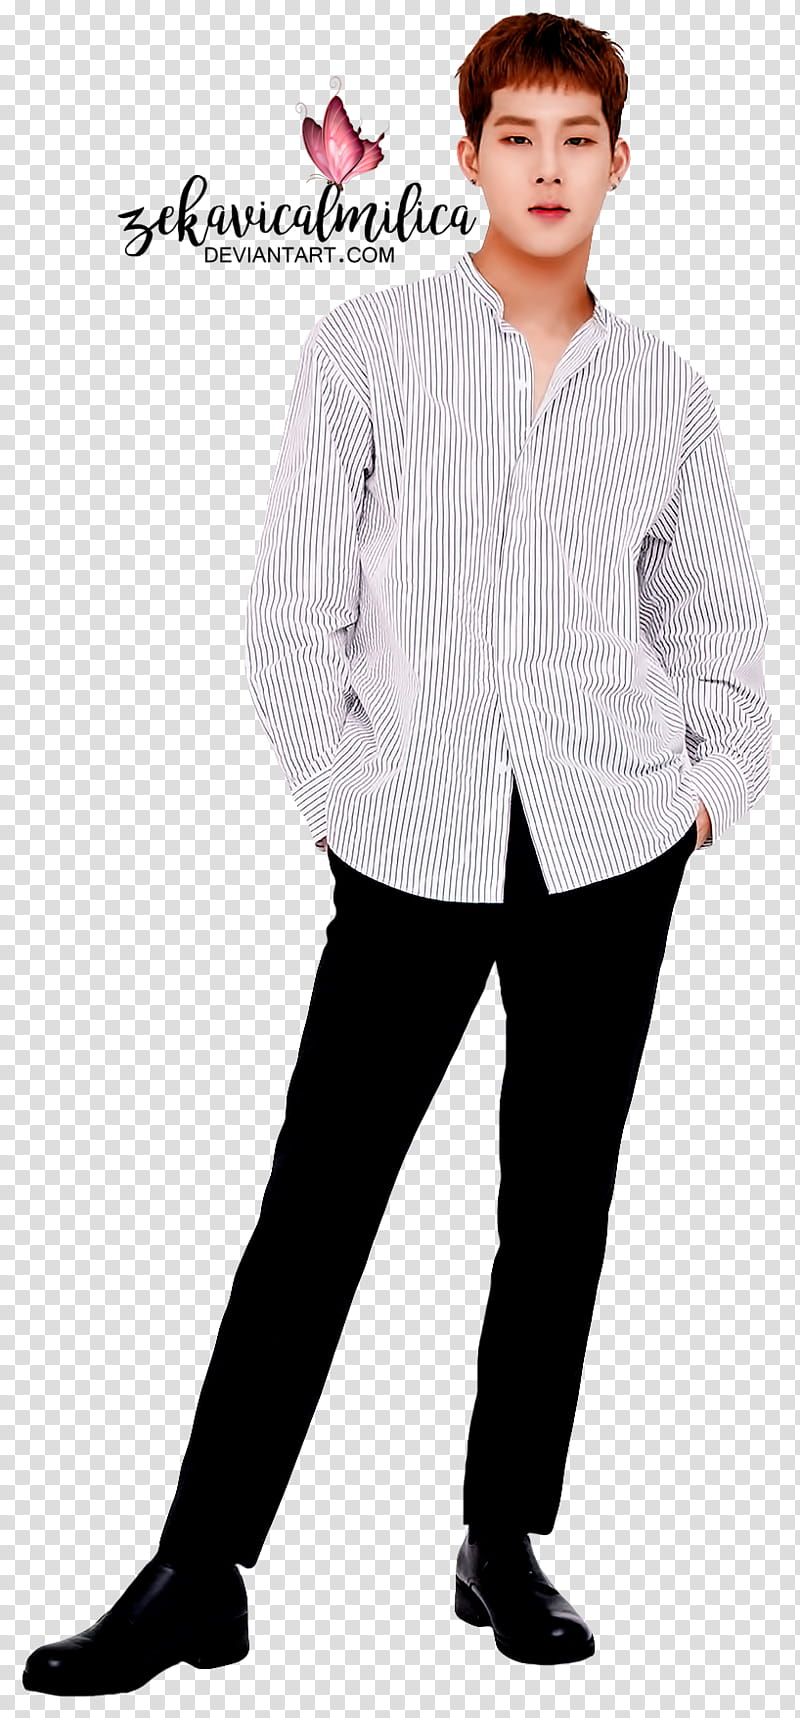 Monsta X Jooheon Fanclub book, Monsta X member wearing gray button-up shirt transparent background PNG clipart